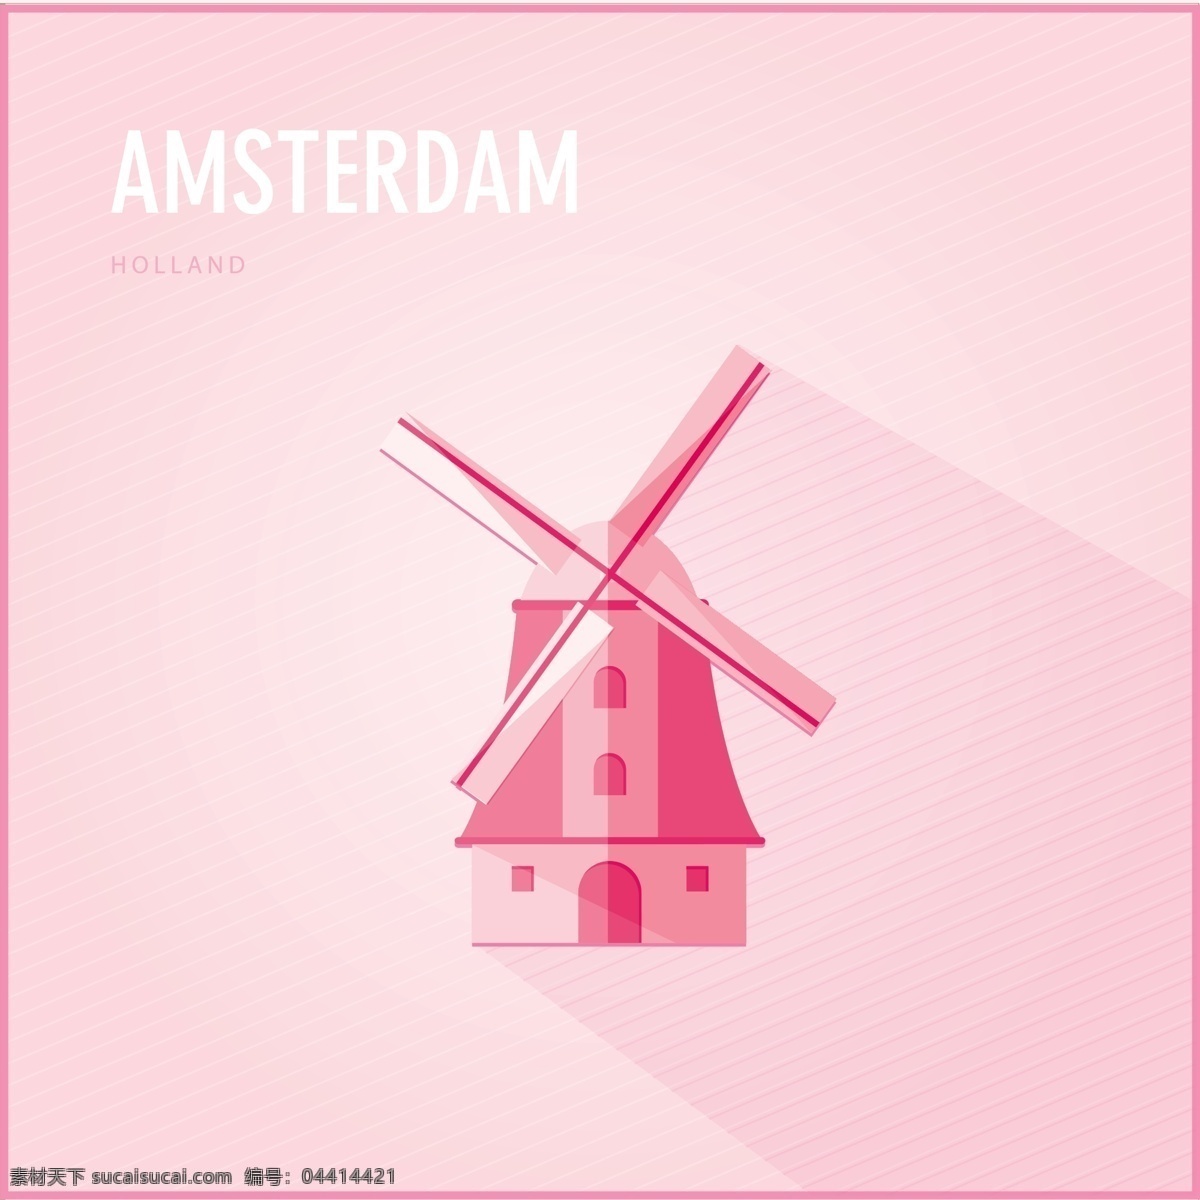 荷兰 阿姆斯特丹 风车 海报 矢量